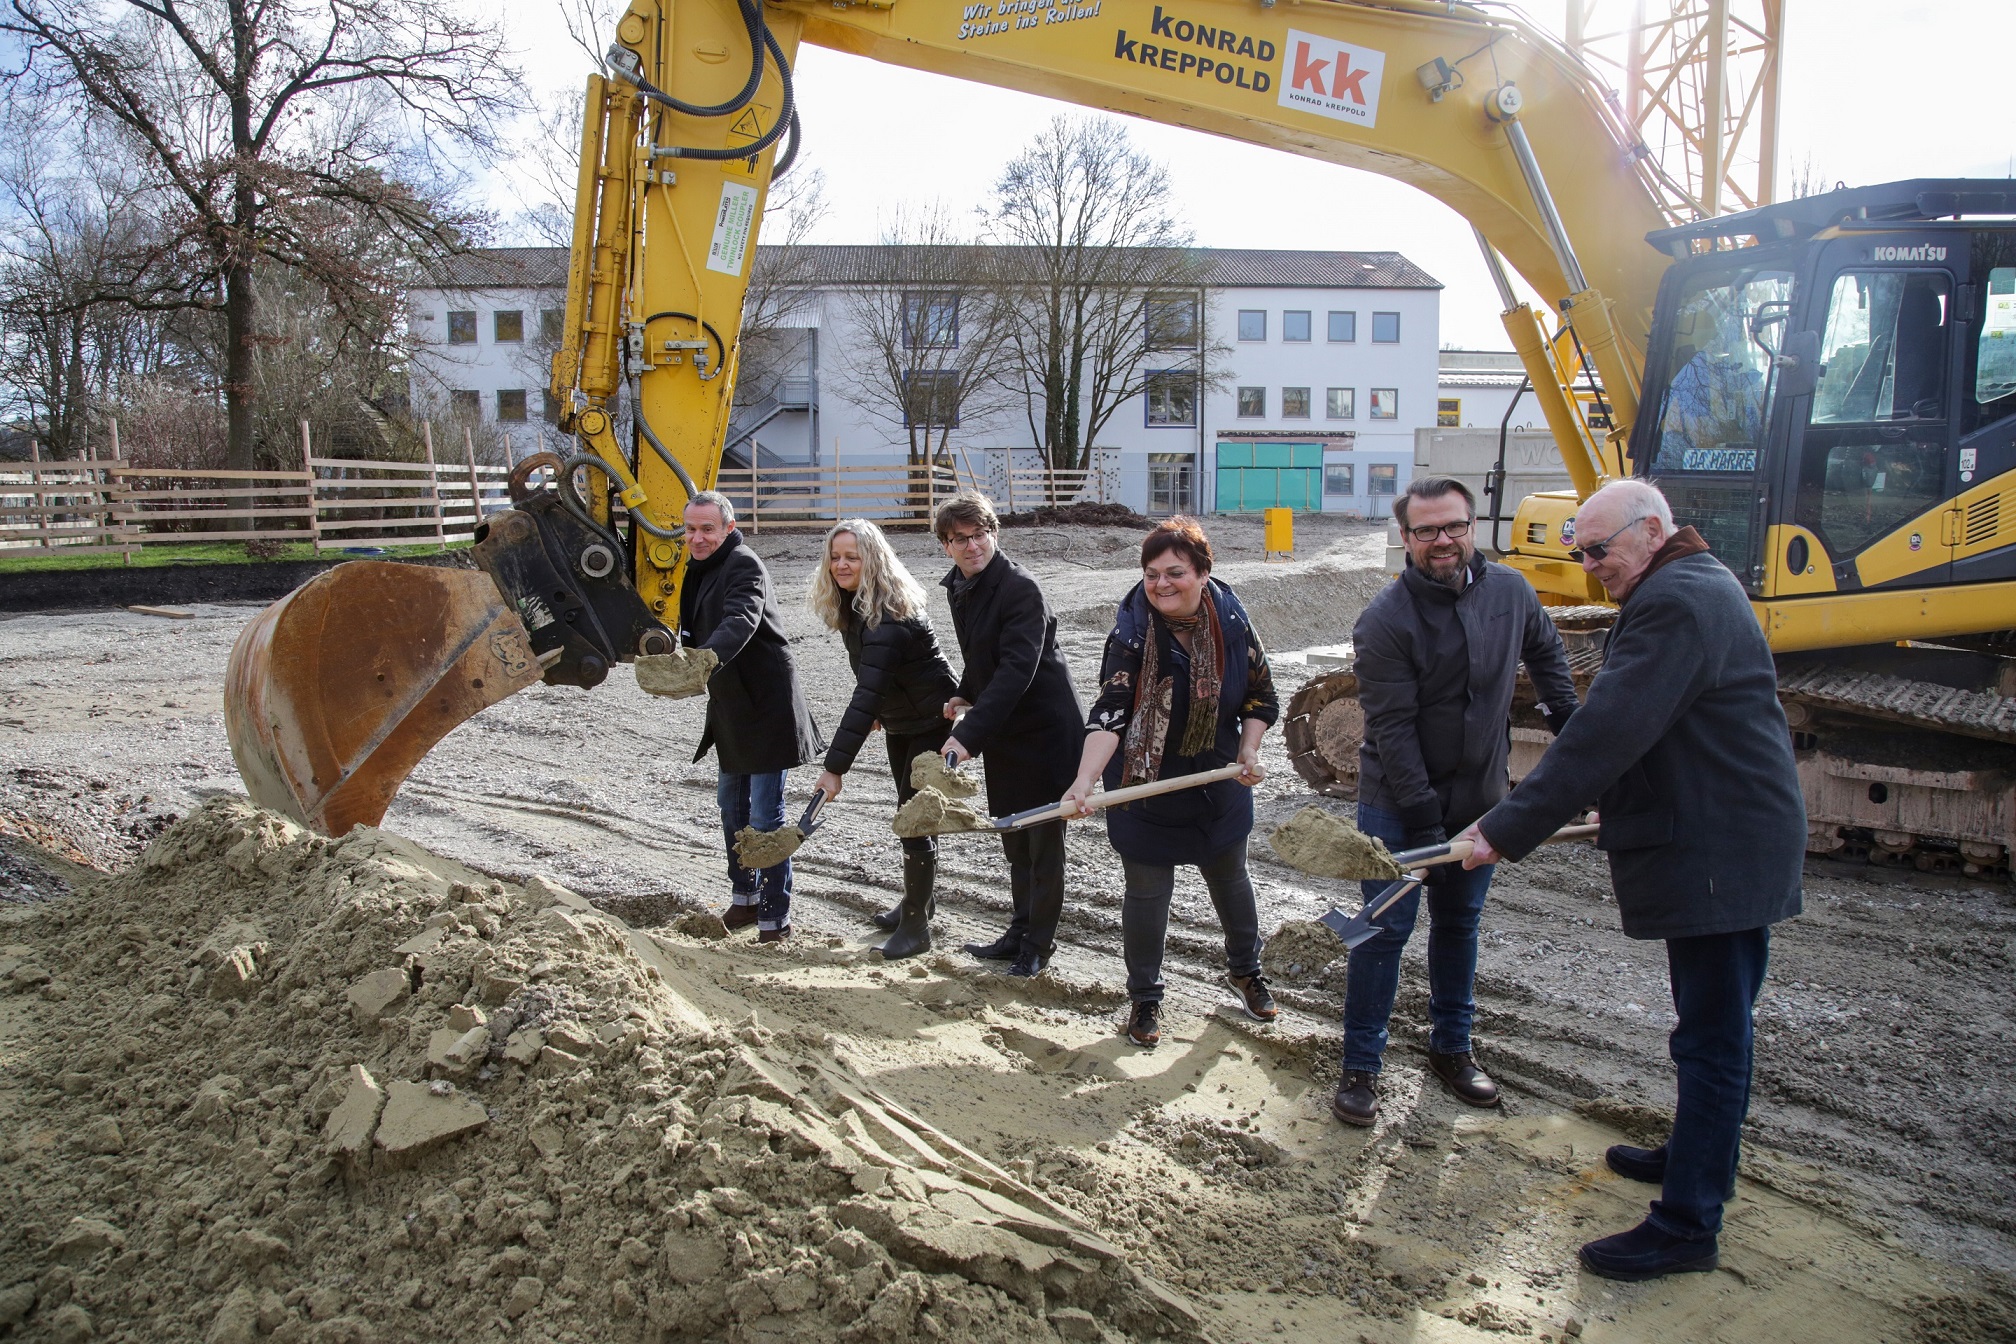 Sechs Personen stehen hinter einem Sandhaufen und halten einen Spaten in der Hand, was den Baubeginn symbolisieren soll. Hinter den Personen stehet ein gelber Bagger.